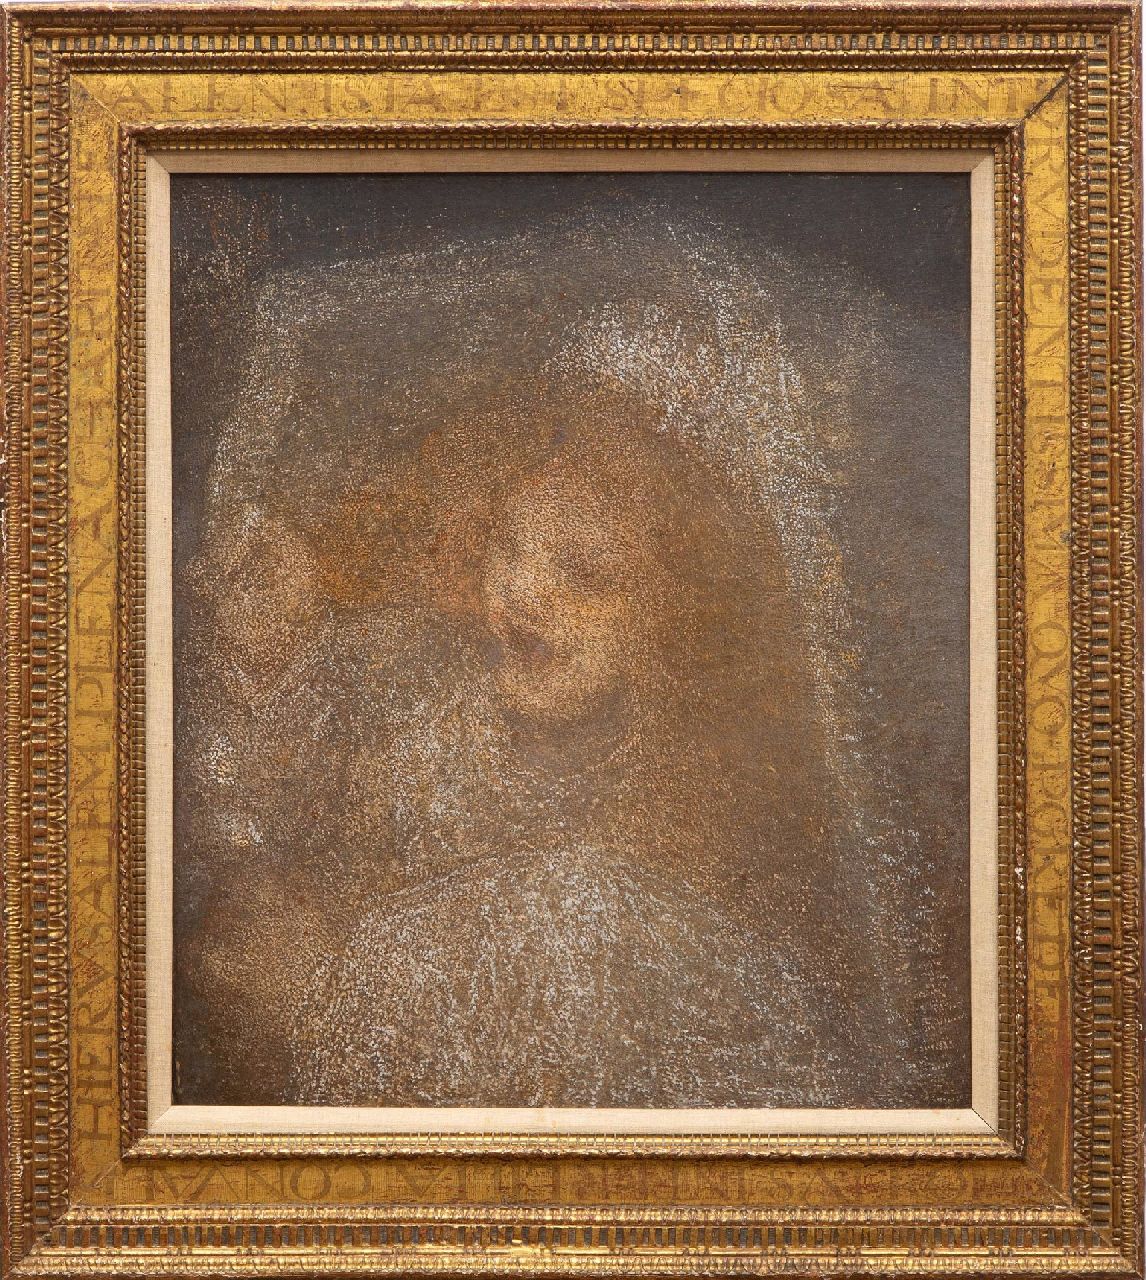 Maris M.  | Matthijs 'Thijs' Maris | Schilderijen te koop aangeboden | Meisje met bruidssluier, olieverf op doek 66,5 x 57,5 cm, te dateren ca. 1905-1915